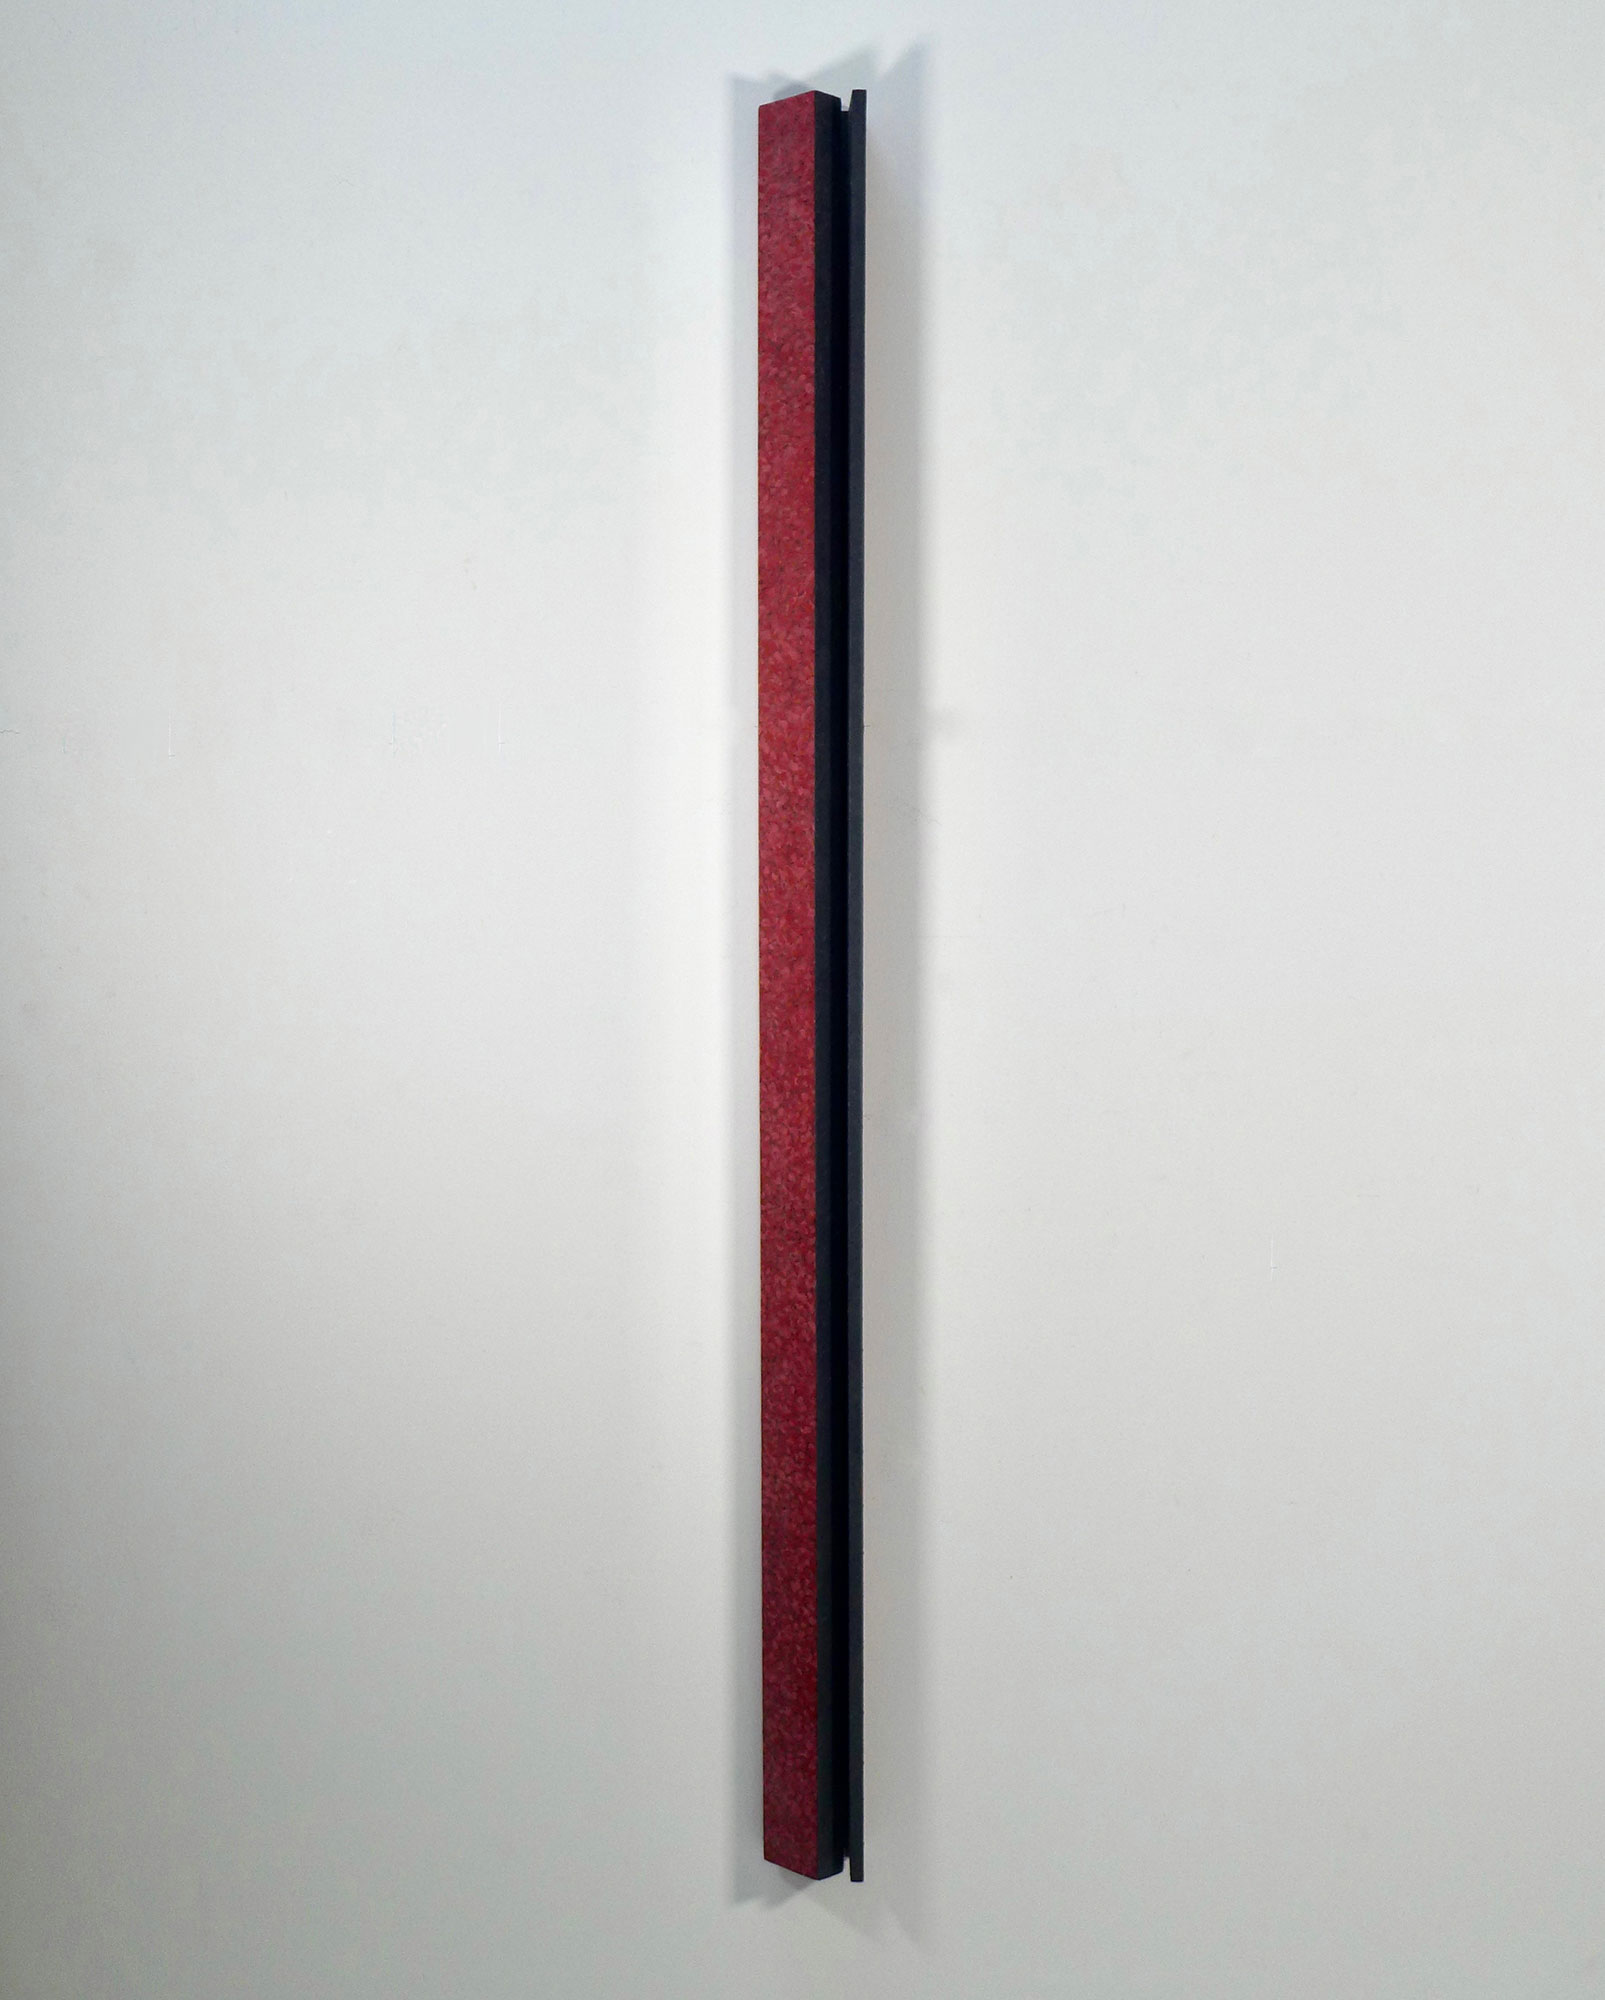 Kenneth Dingwall, Restrained, 1985, acrylic on wood, 160cm x 10cm x 7.6cm